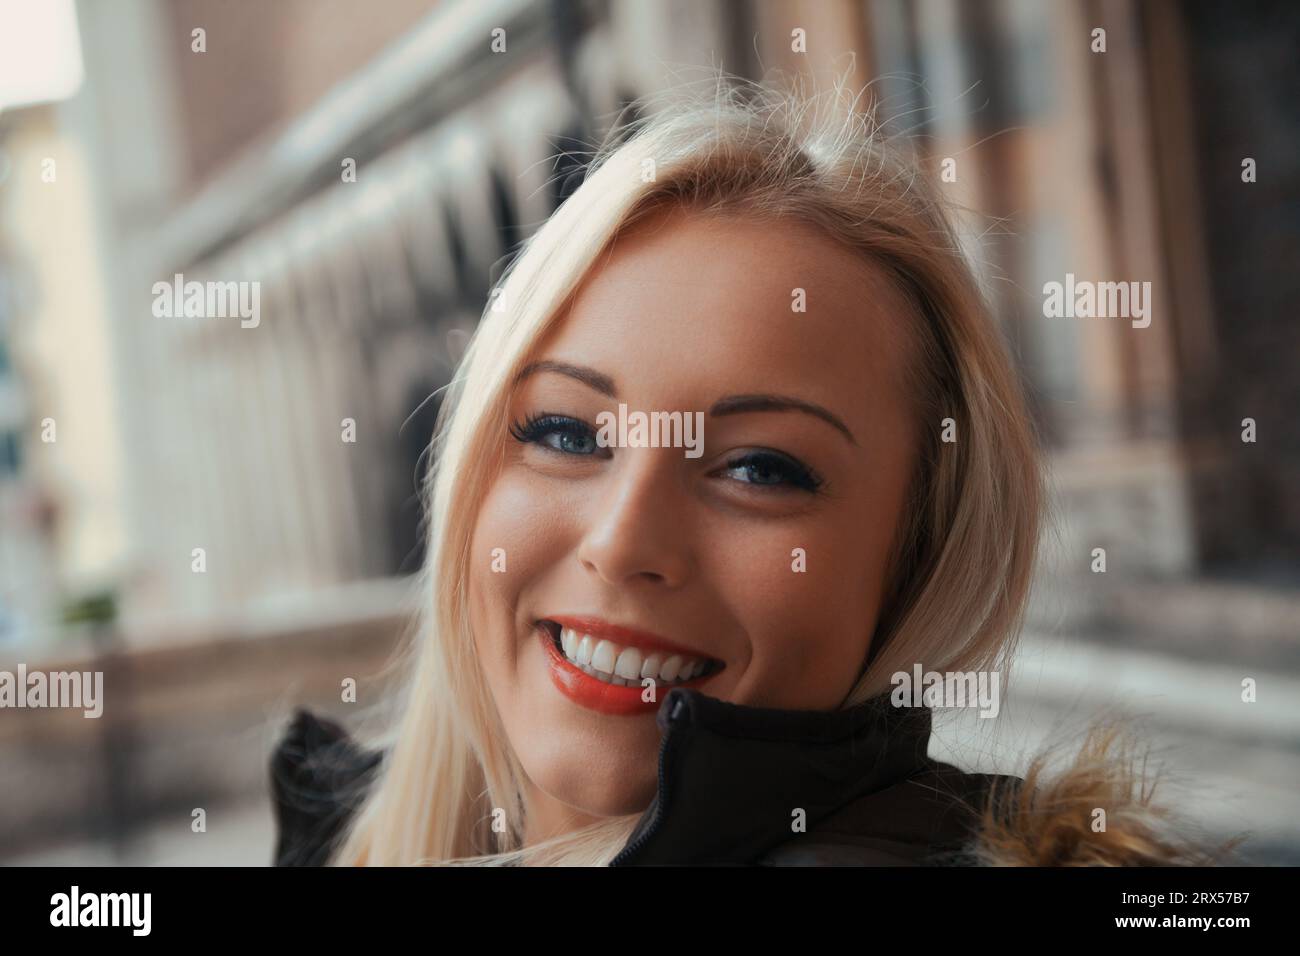 Das strahlende Lächeln und das makellose Make-up der jungen blonden Frau füllen den Rahmen, während sie ihre europäische Reise genießt. Dank des kulturellen Austauschs der Studenten Stockfoto